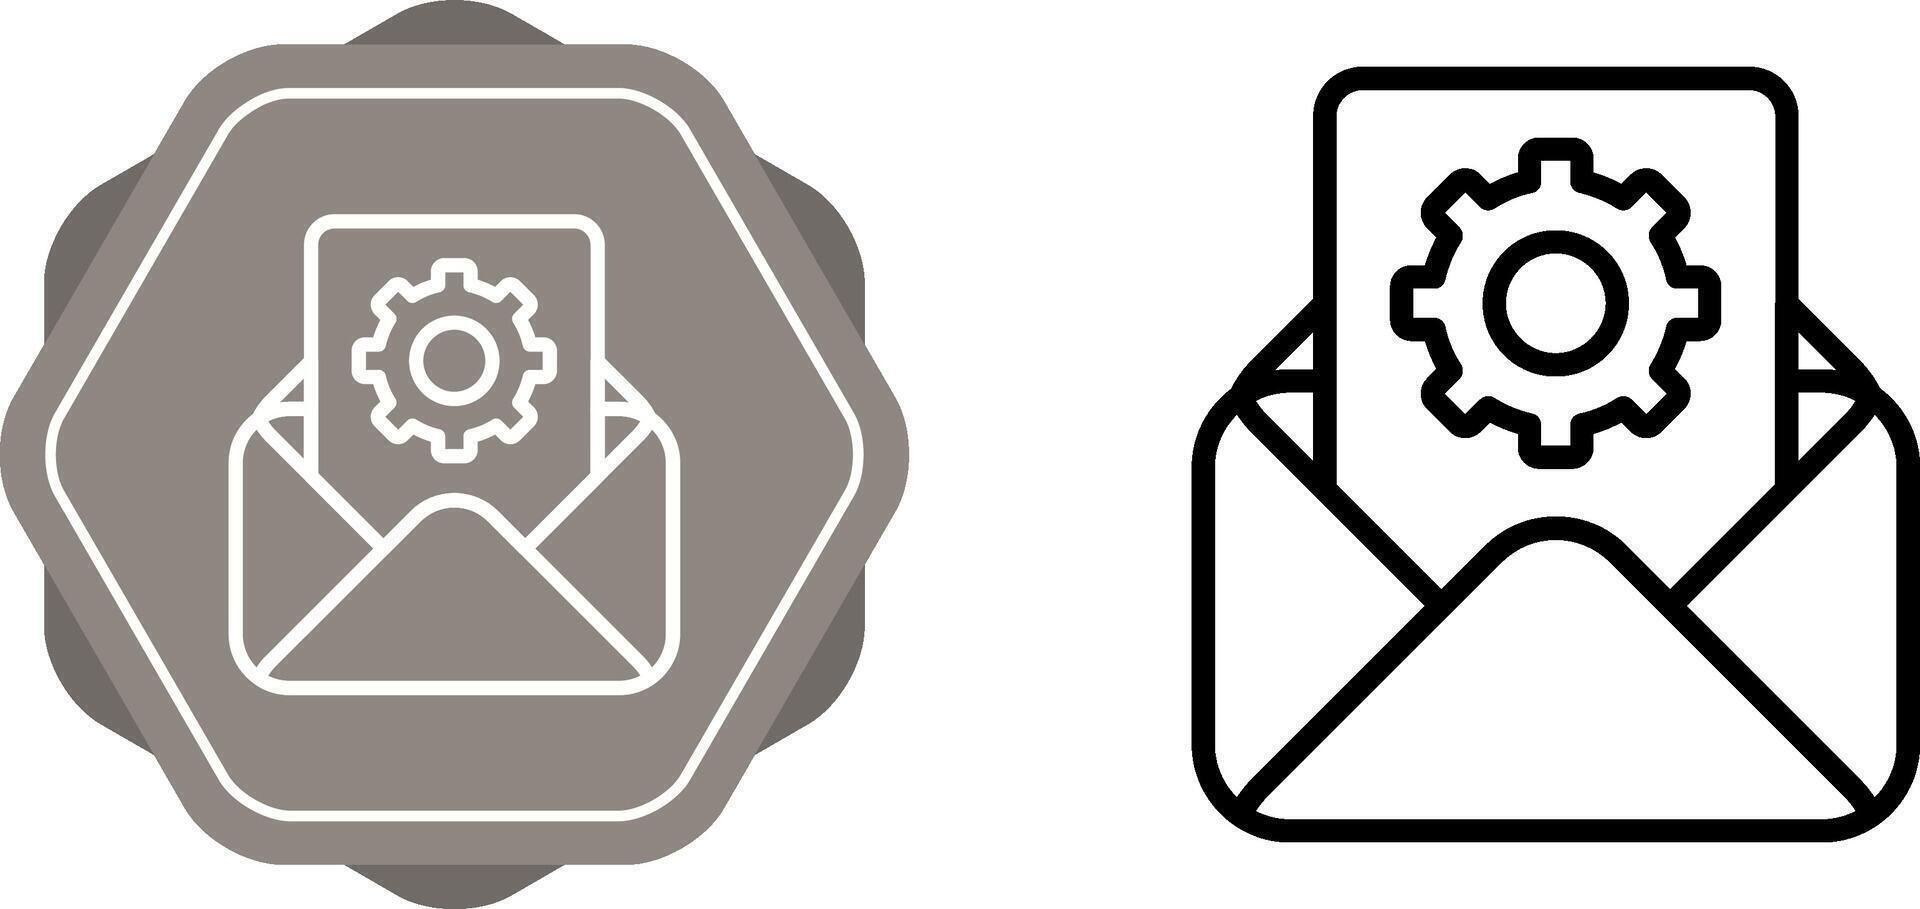 email prestations de service vecteur icône